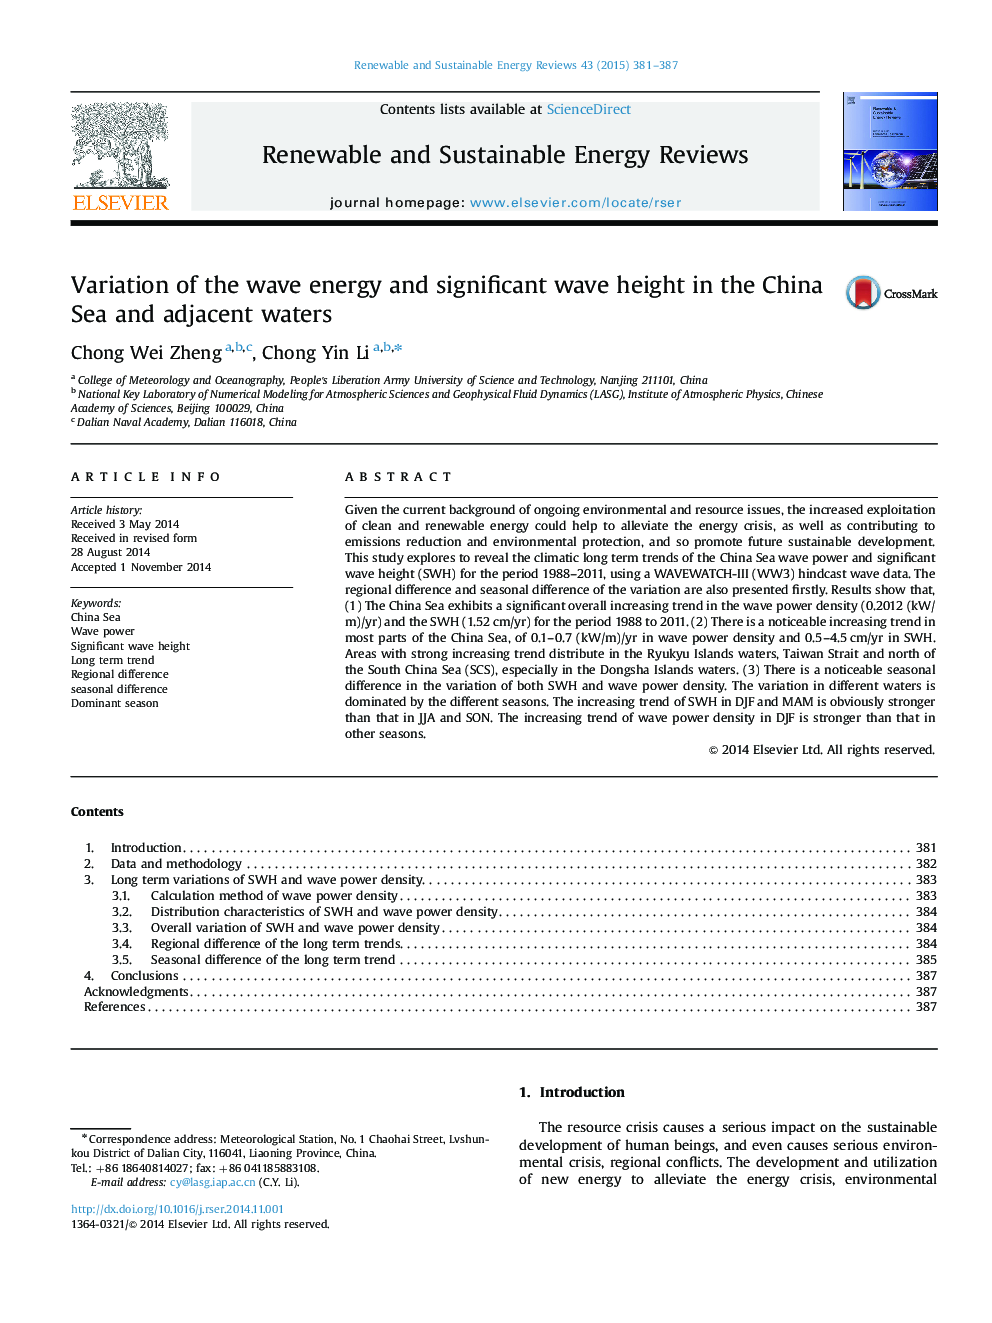 تغییر انرژی موج و ارتفاع قابل توجهی در دریای چین و آبهای مجاور 